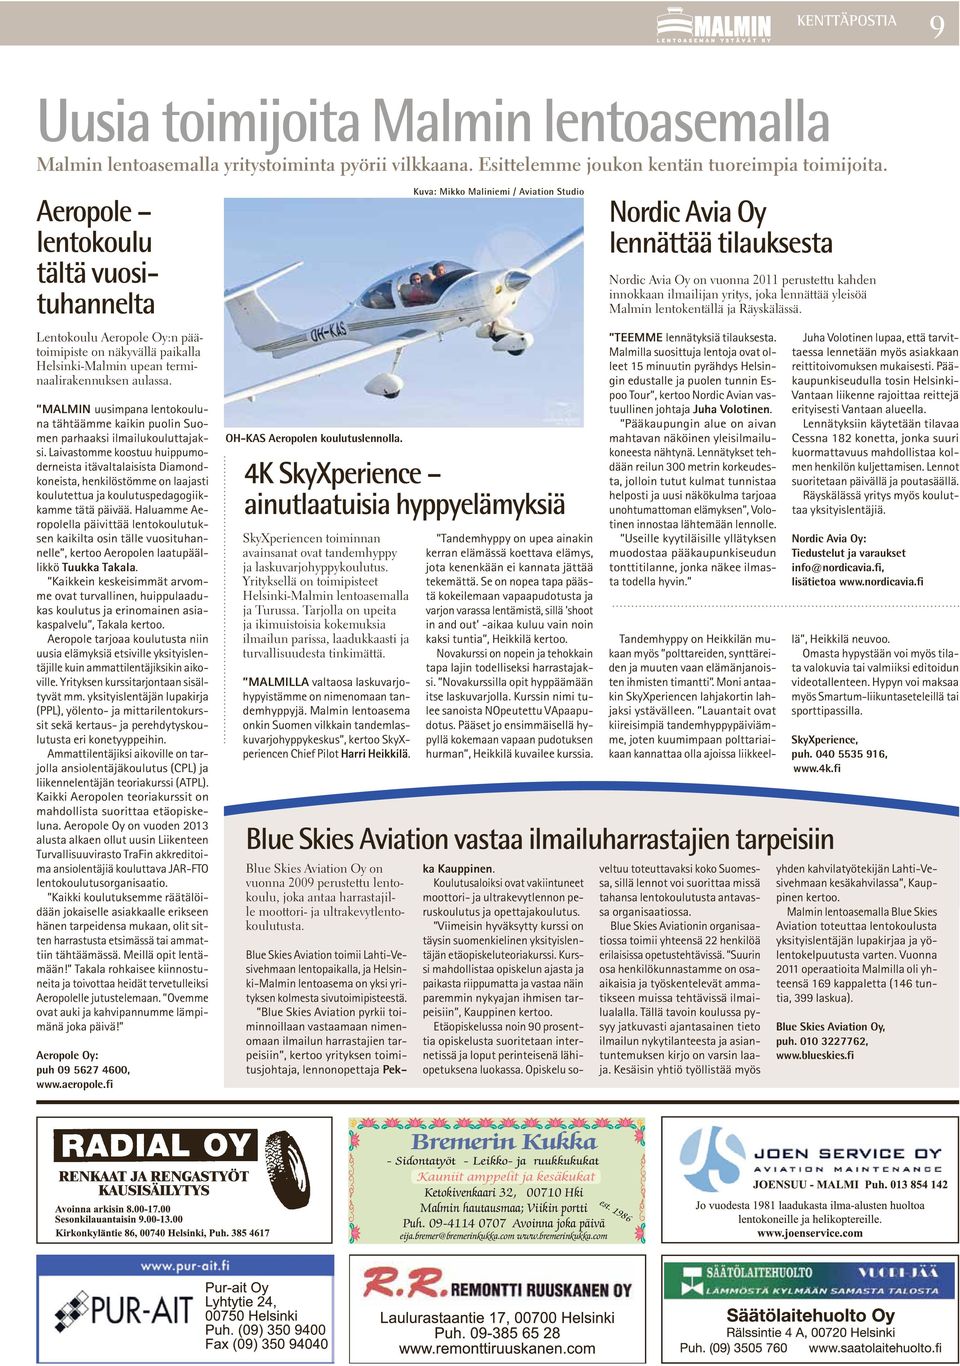 Malmin uusimpana lentokouluna tähtäämme kaikin puolin Suomen parhaaksi ilmailukouluttajaksi.